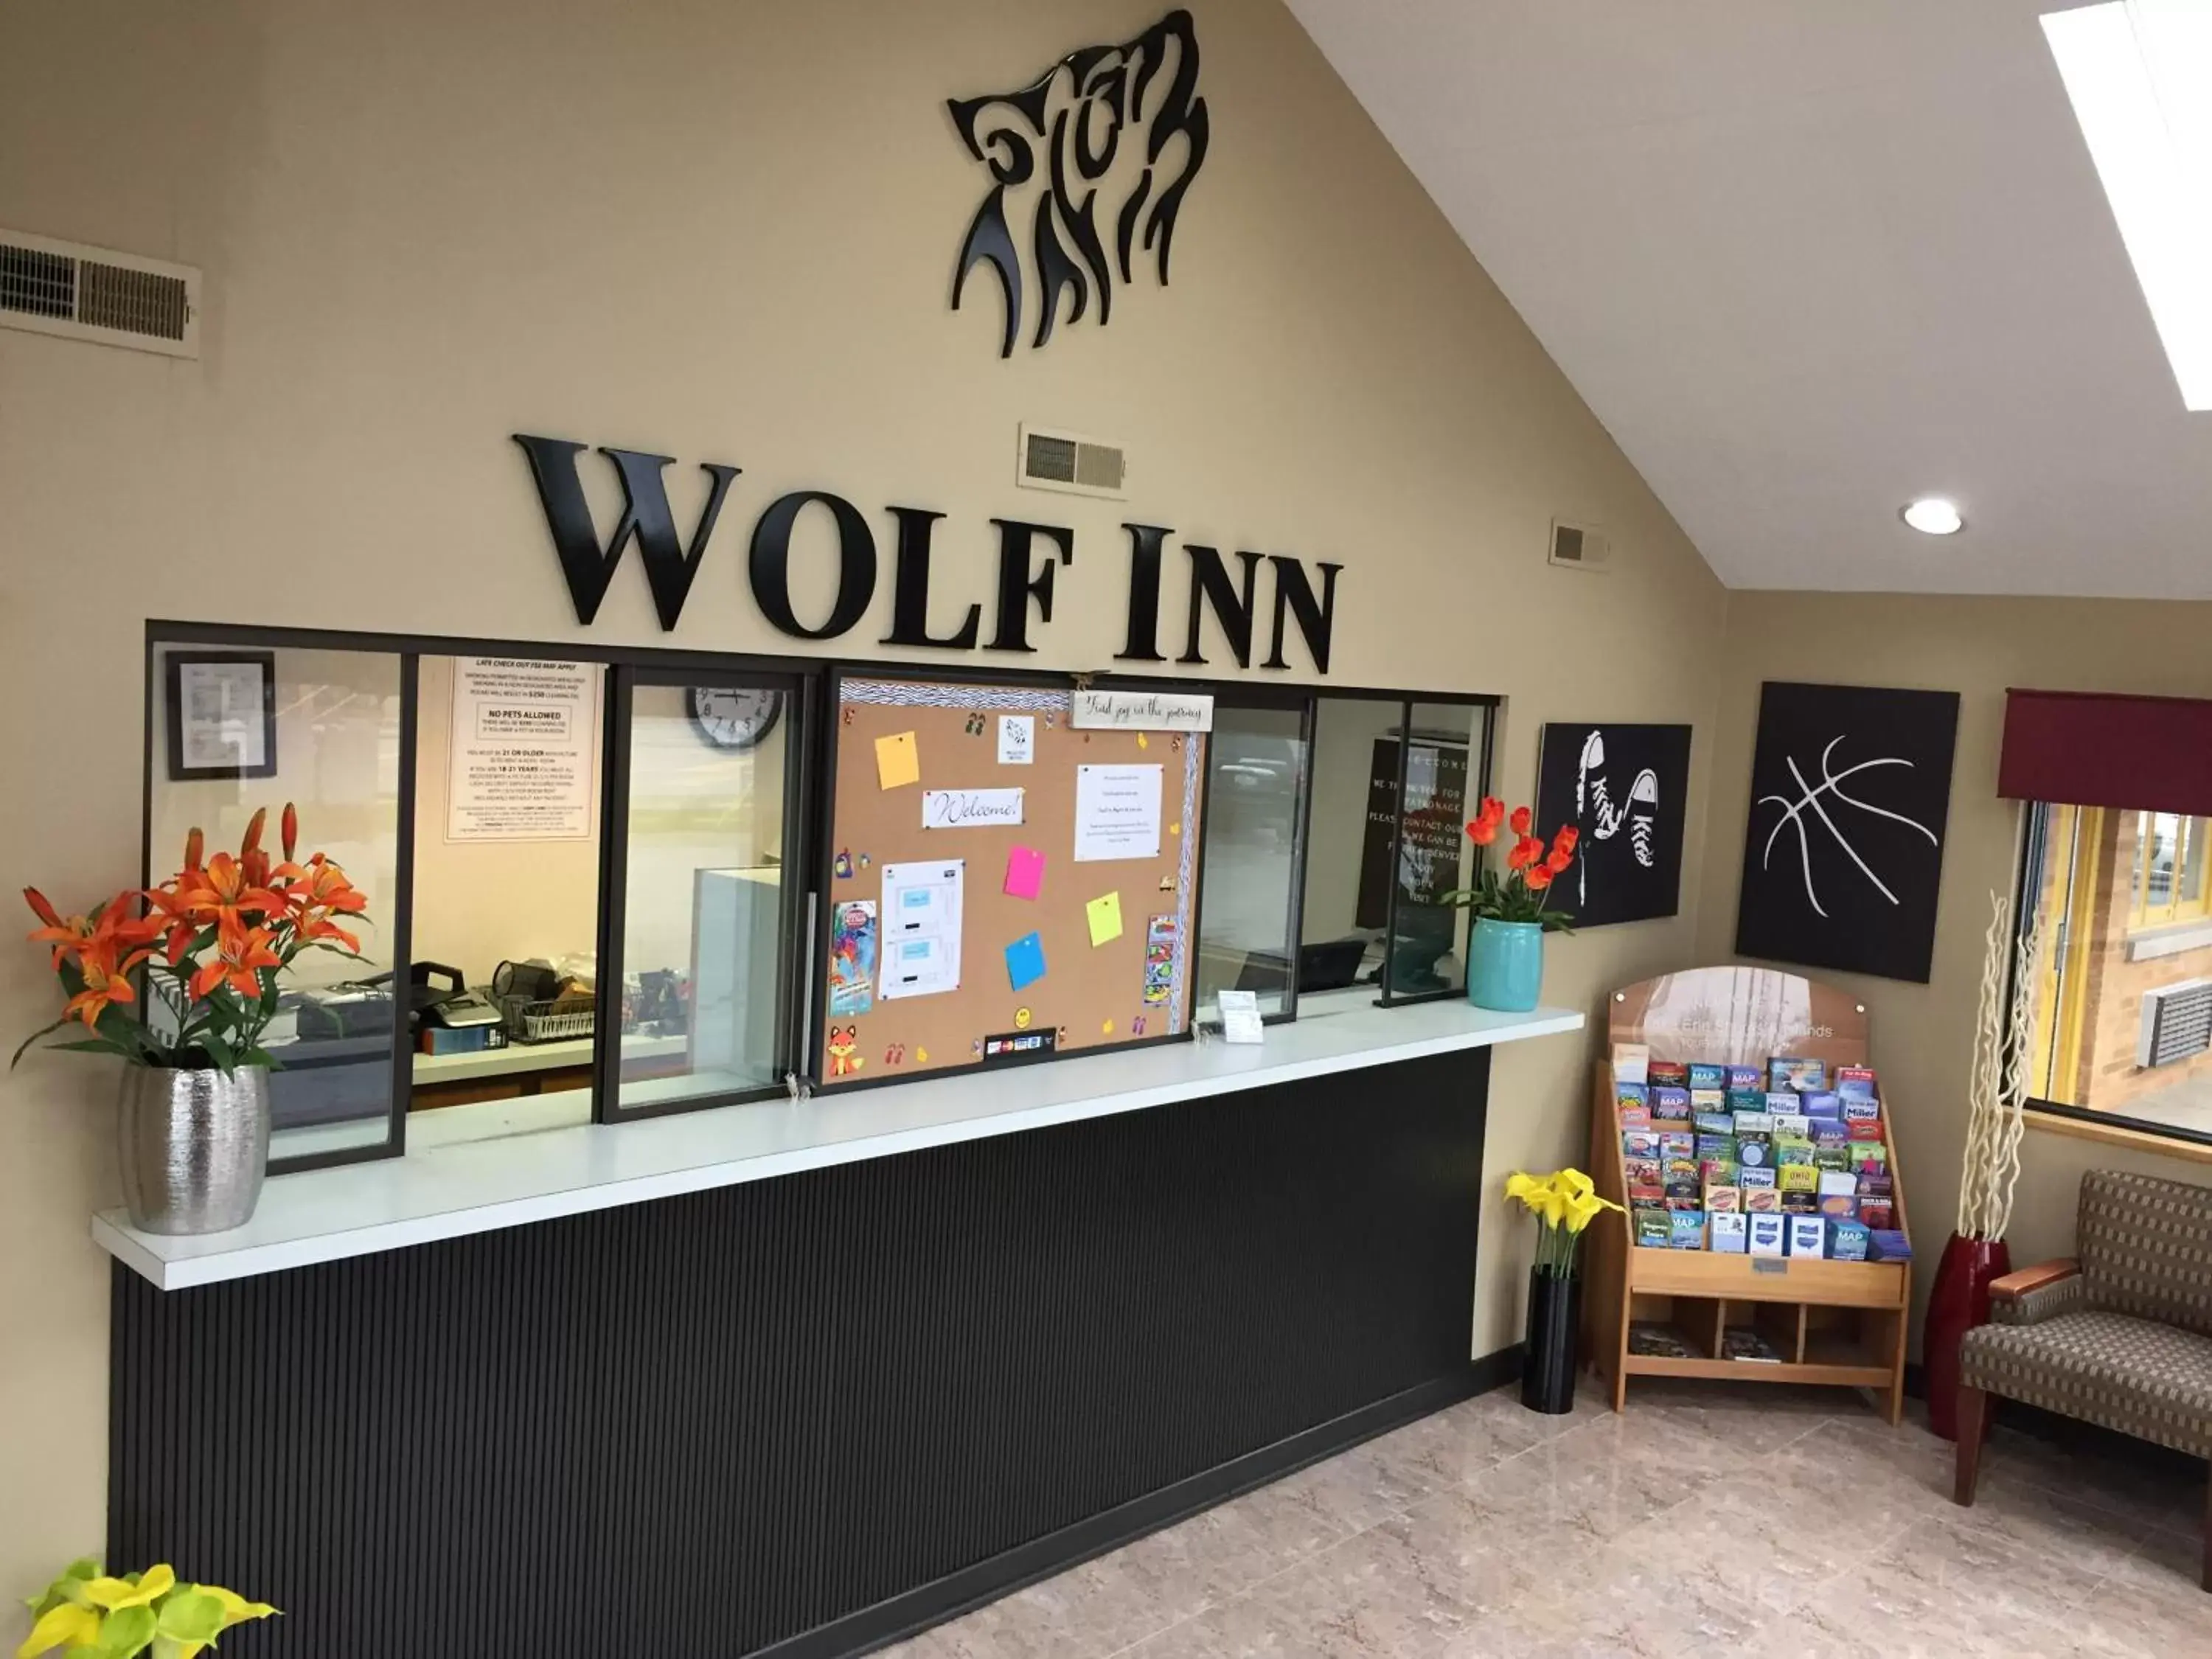 Lobby or reception, Lobby/Reception in Wolf Inn Hotel